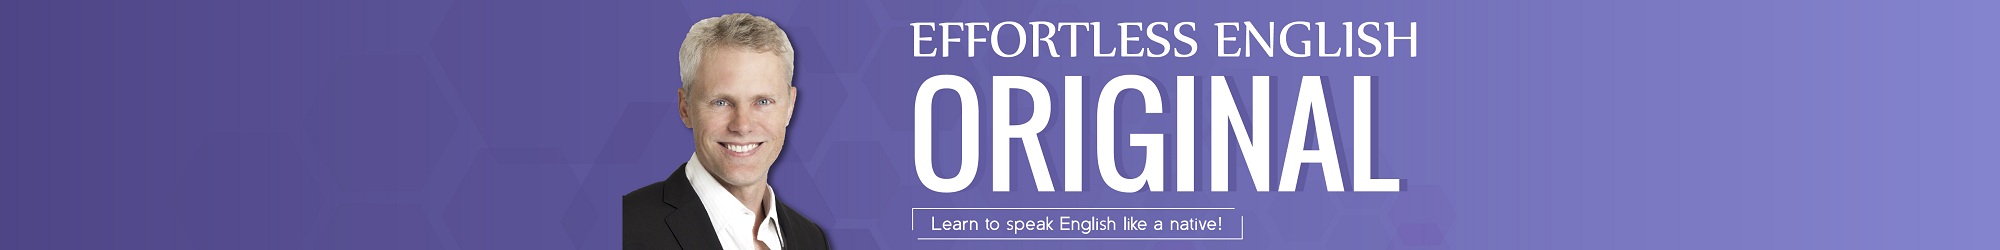 ORIGINAL EFFORTLESS ENGLISH